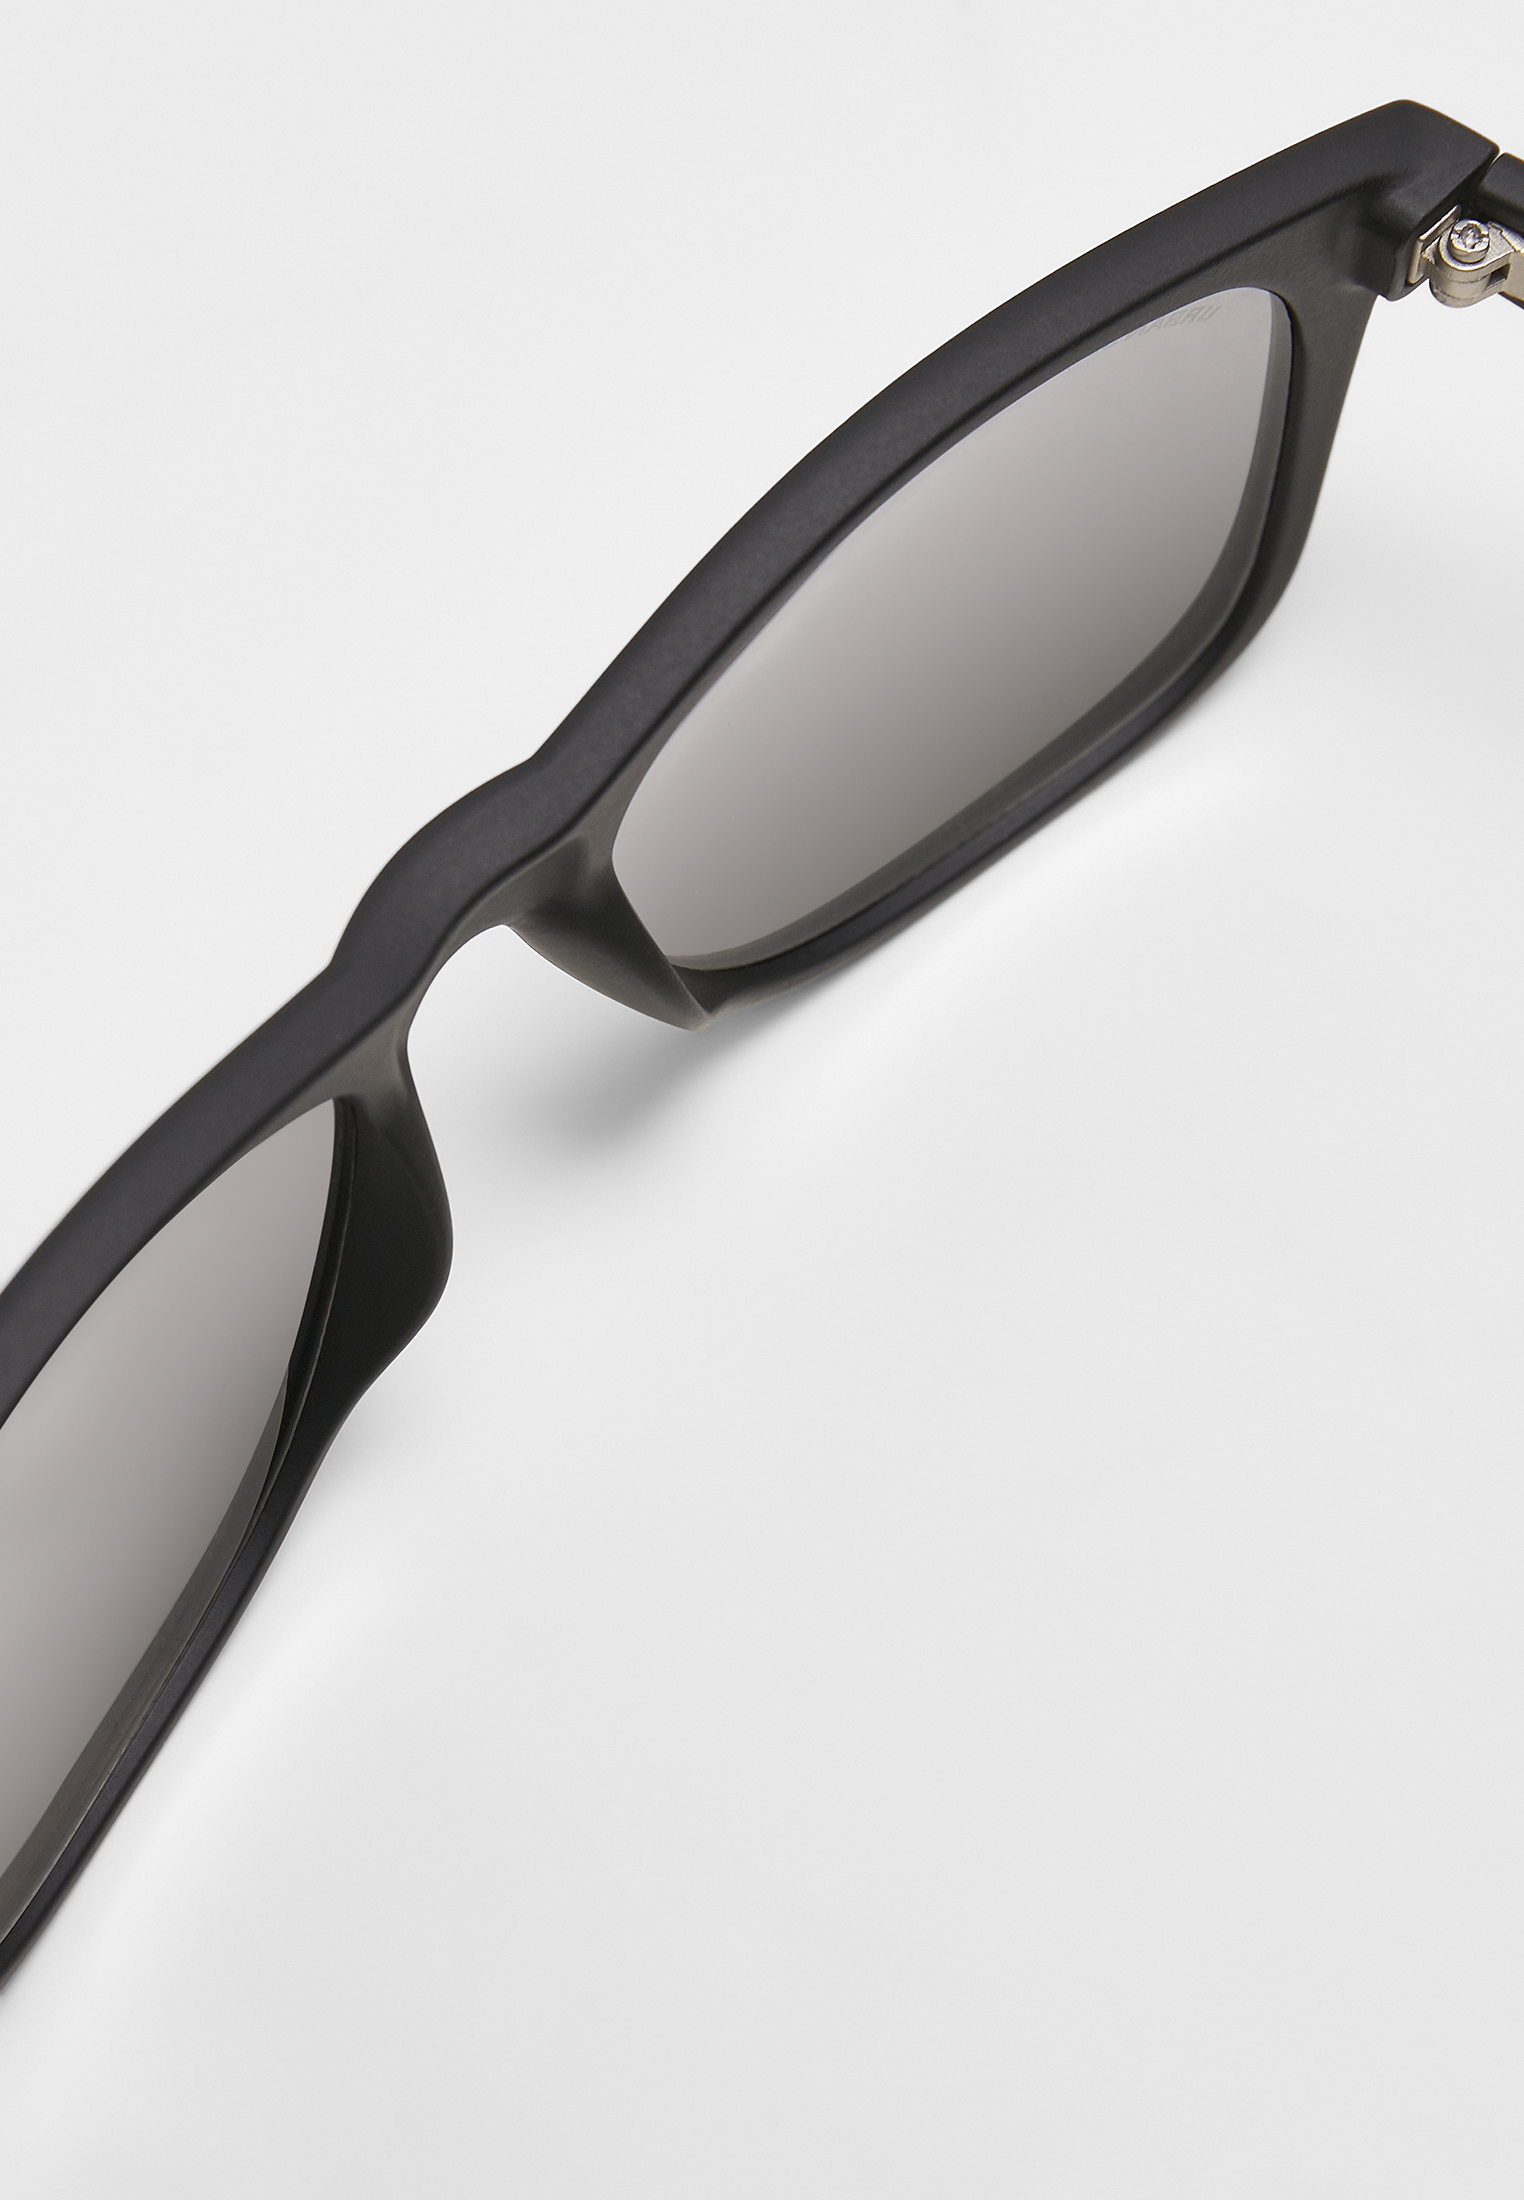 Sonnenbrillen Sunglasses Likoma Mirror UC in Farbe black/silver